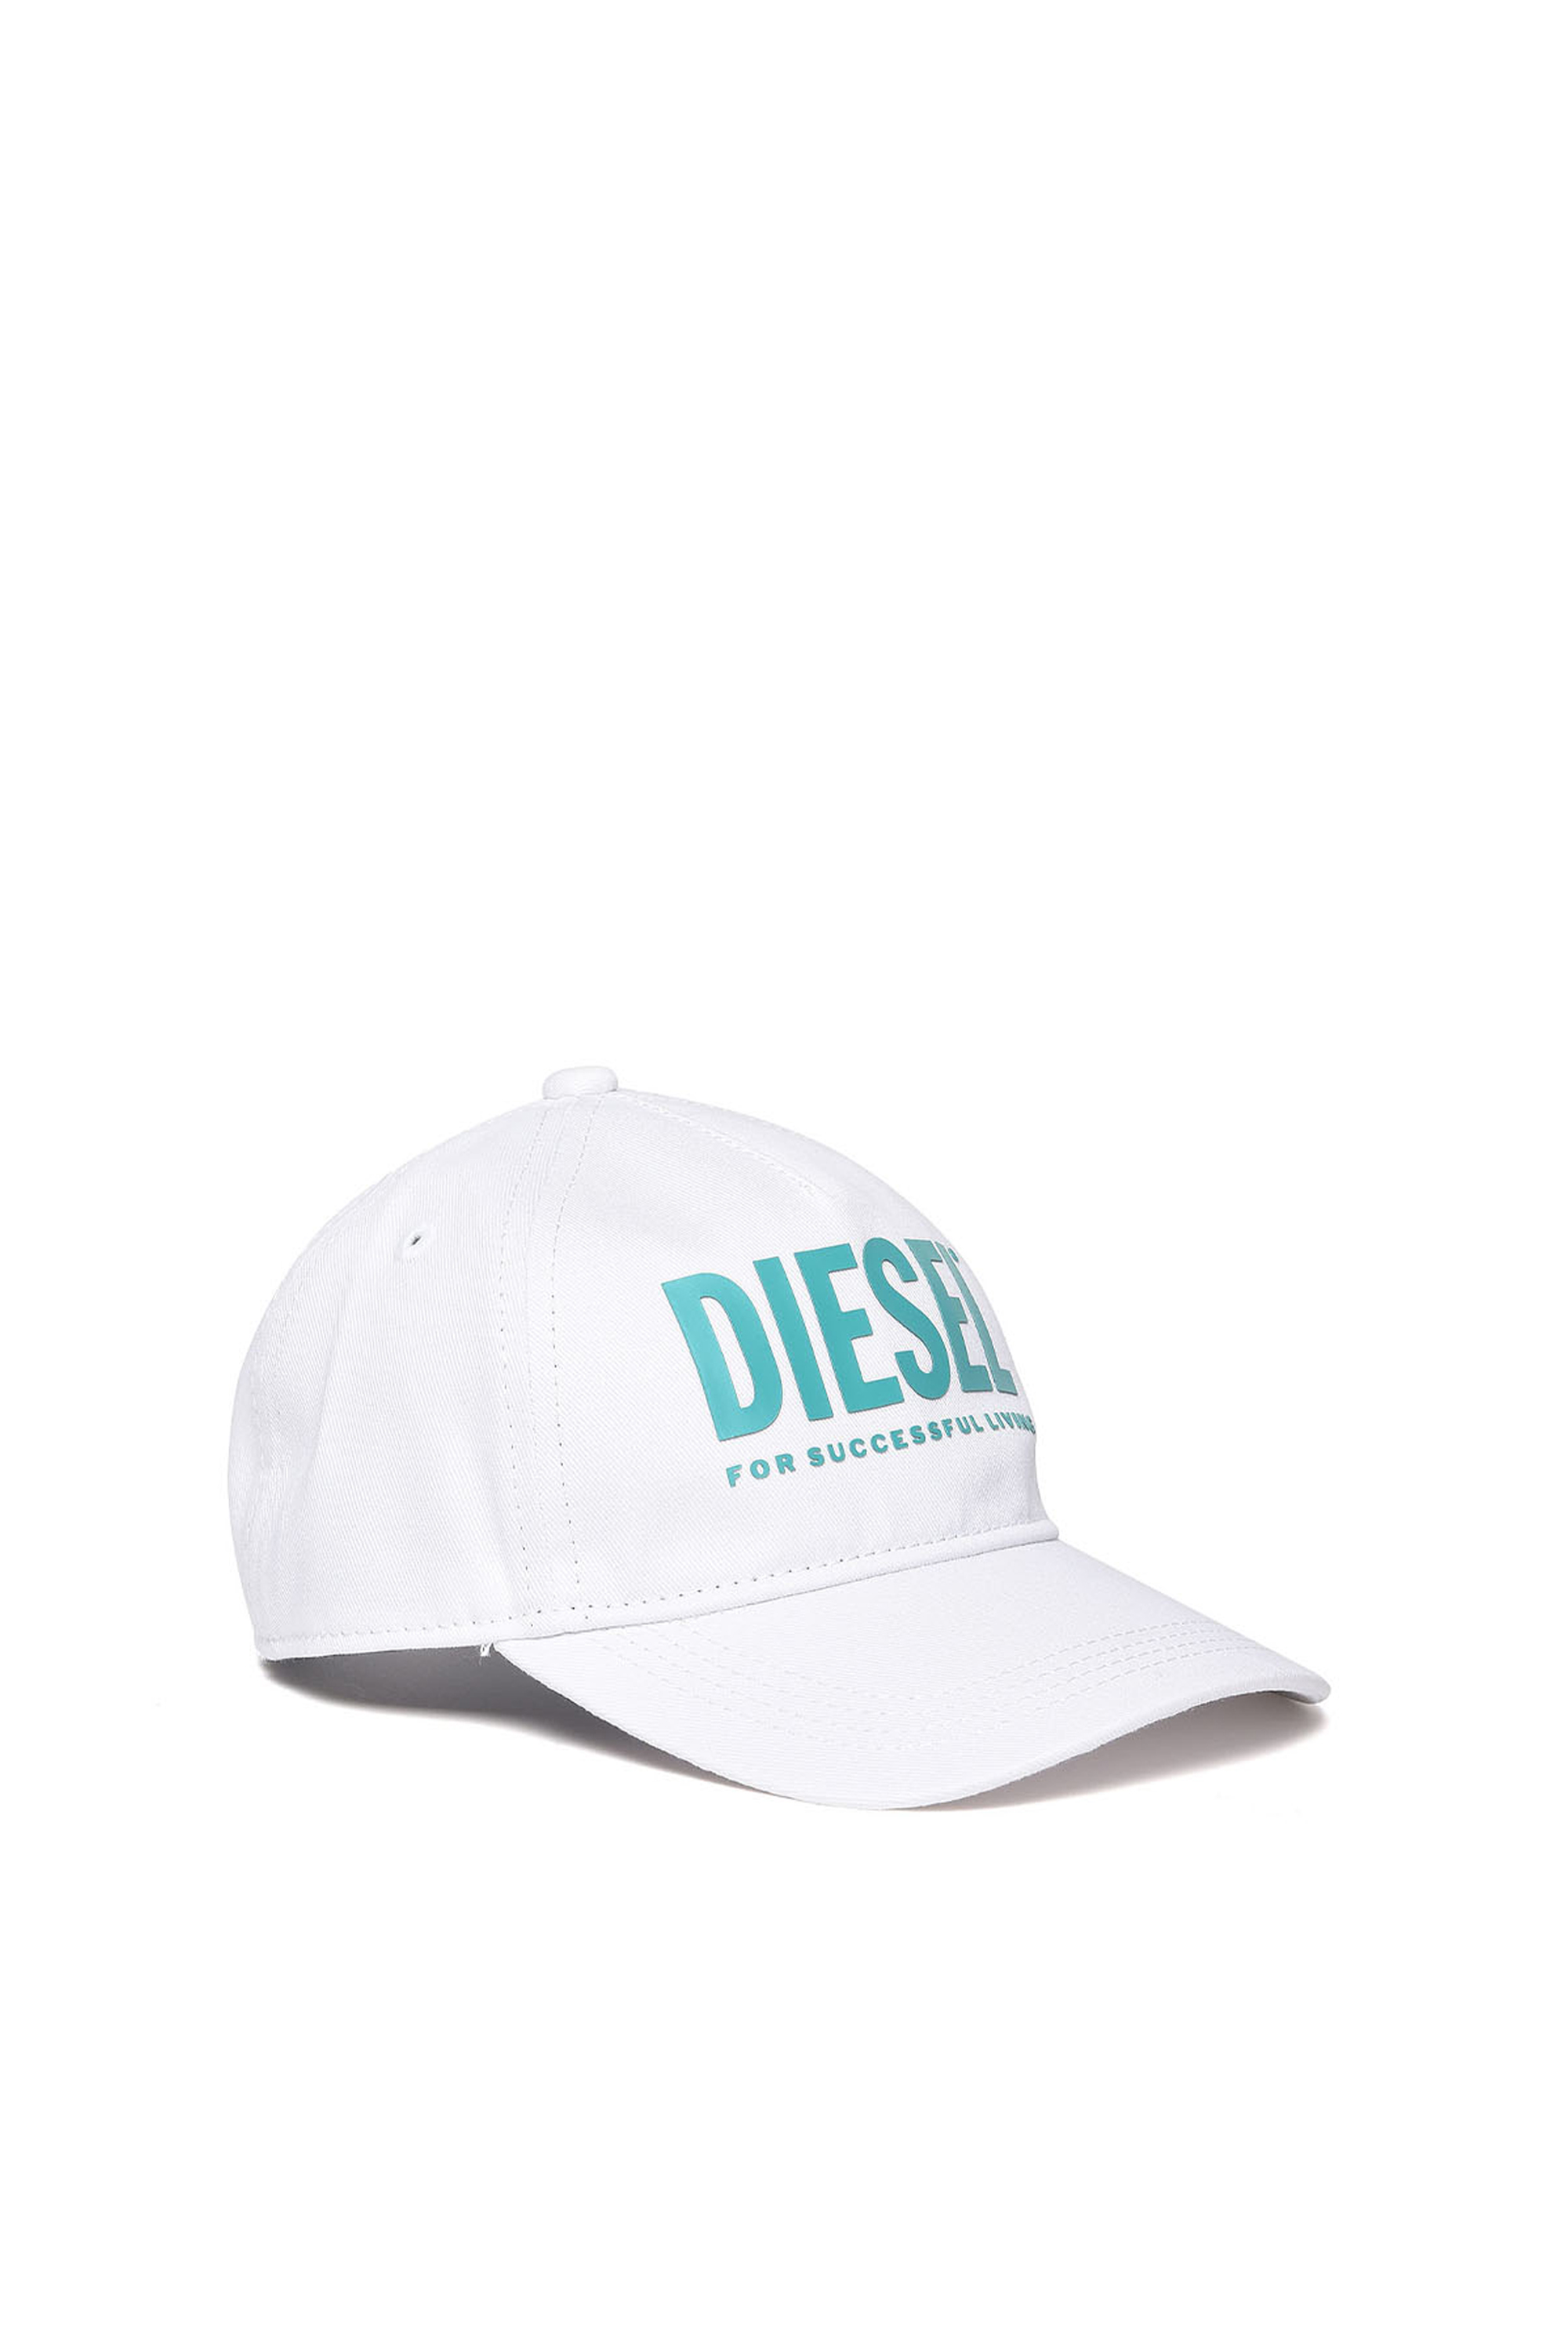 Diesel - FTOLLYB, White - Image 1